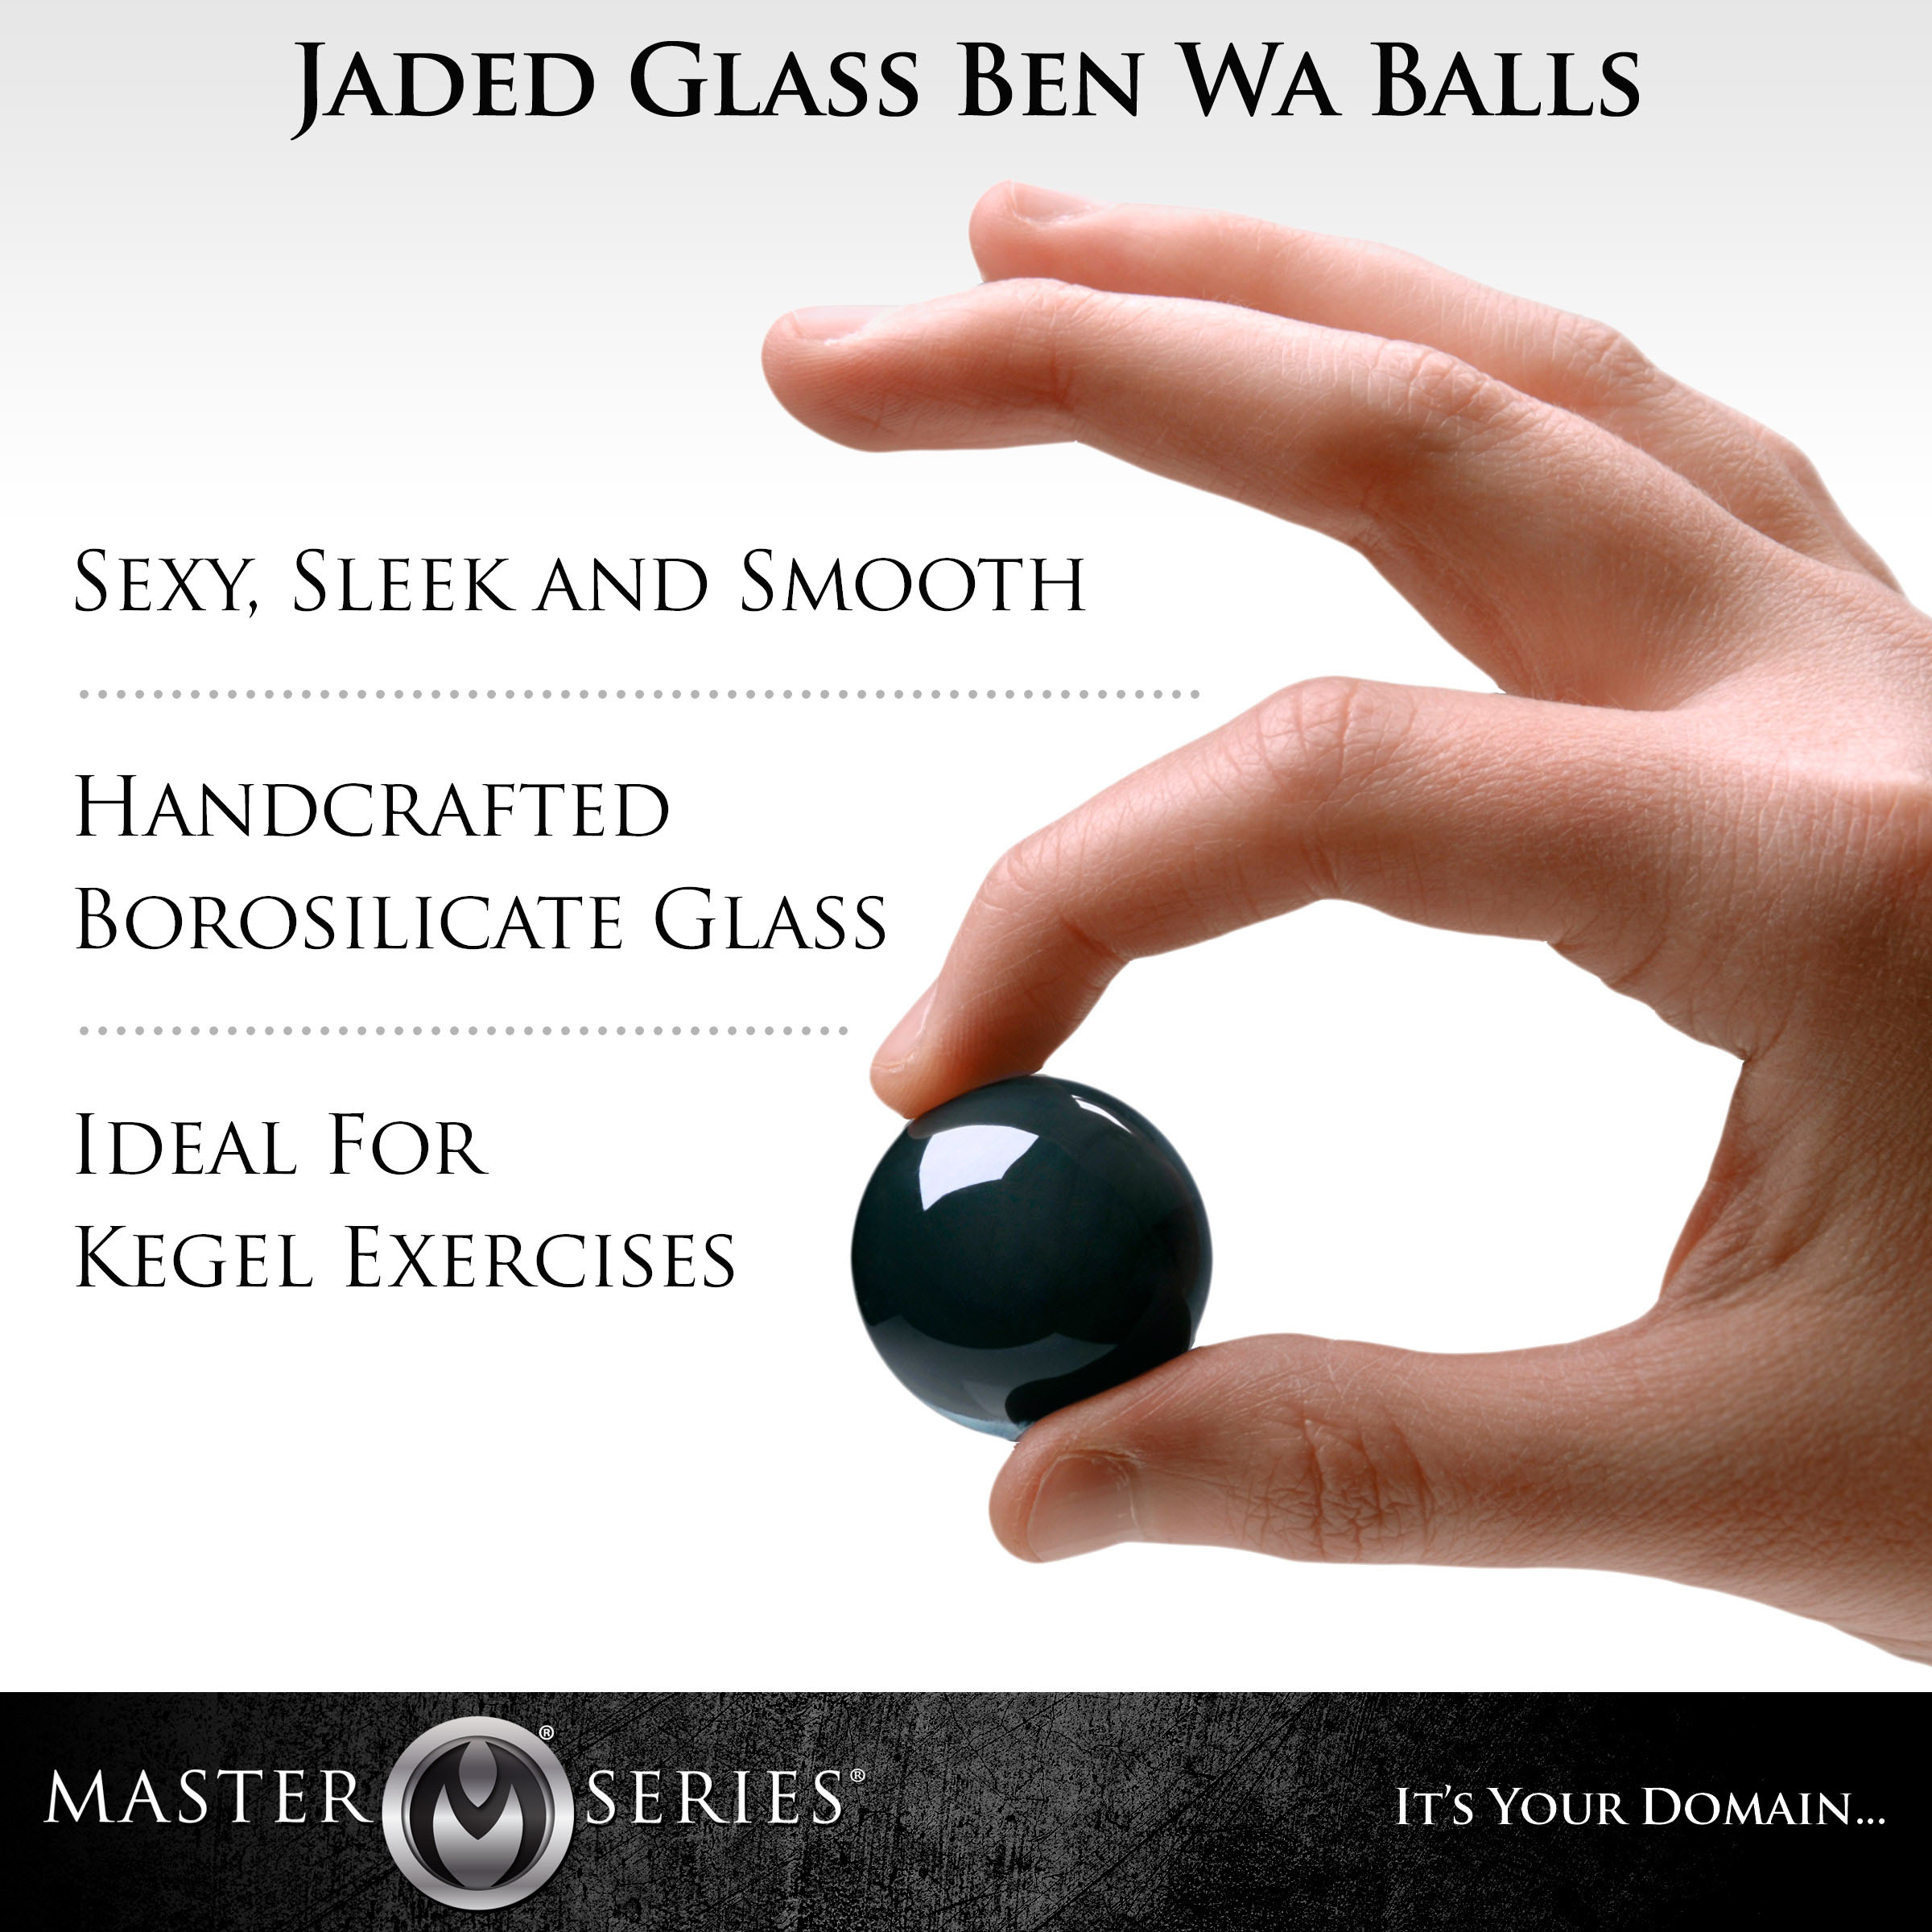 Jaded Glass Ben Wa Balls